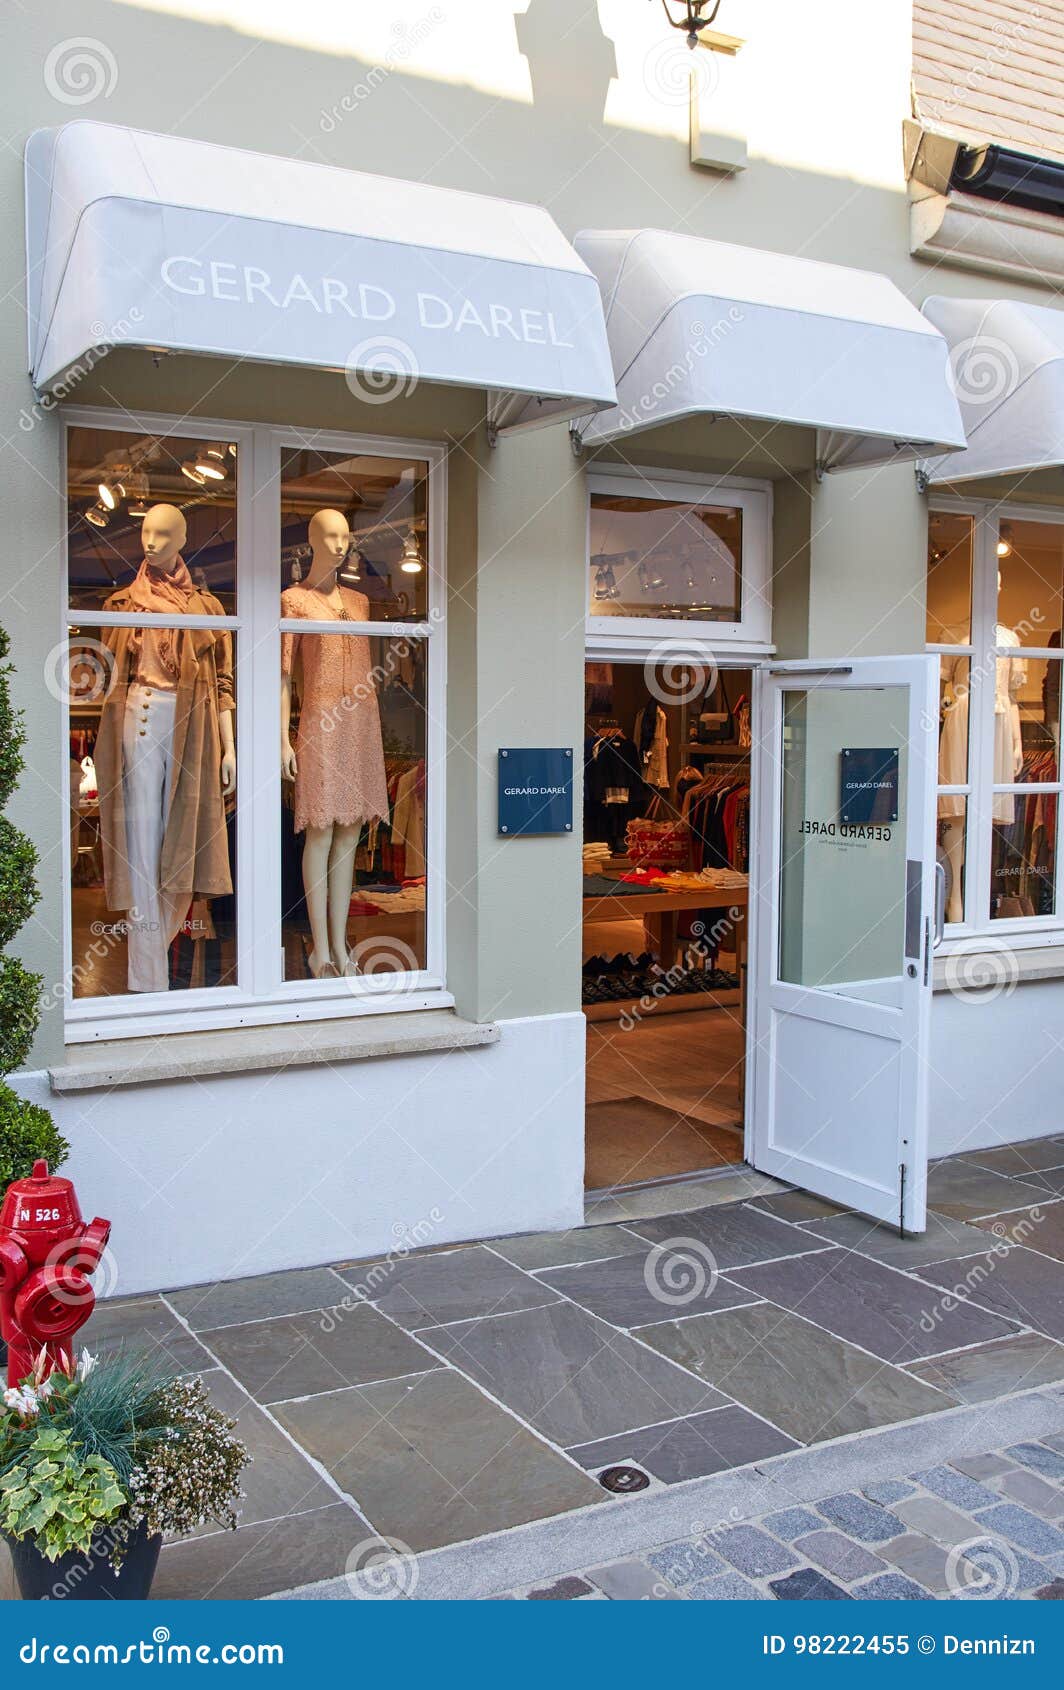 Gerard Darel Boutique in La Vallee Village. Editorial Image - Image of ...